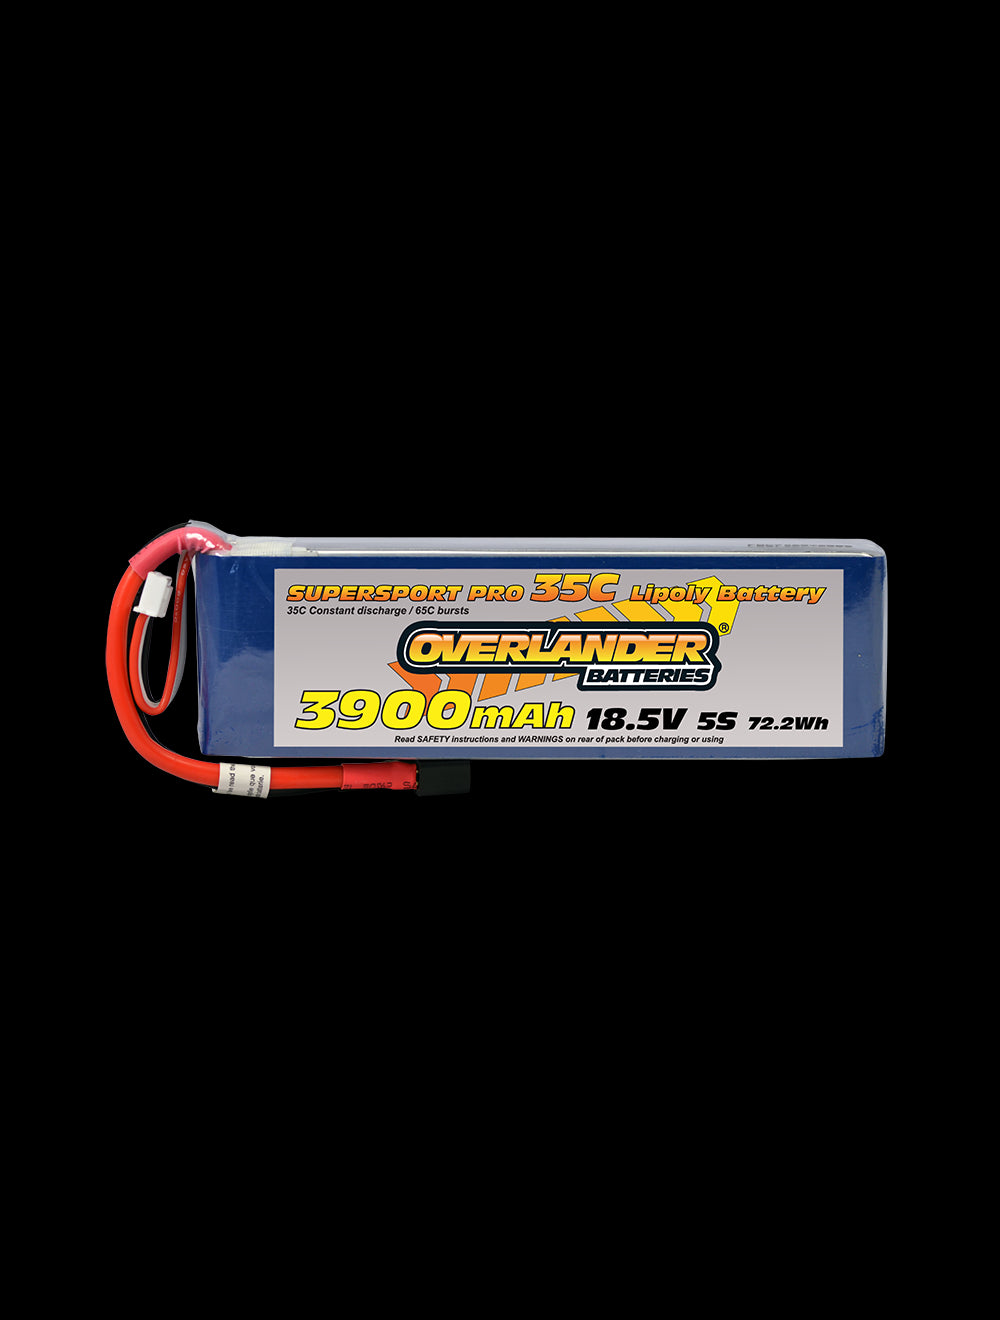 Overlander 3900mAh 18.5V 5S 35C Supersport Pro LiPo Battery - Deans Connector 3191